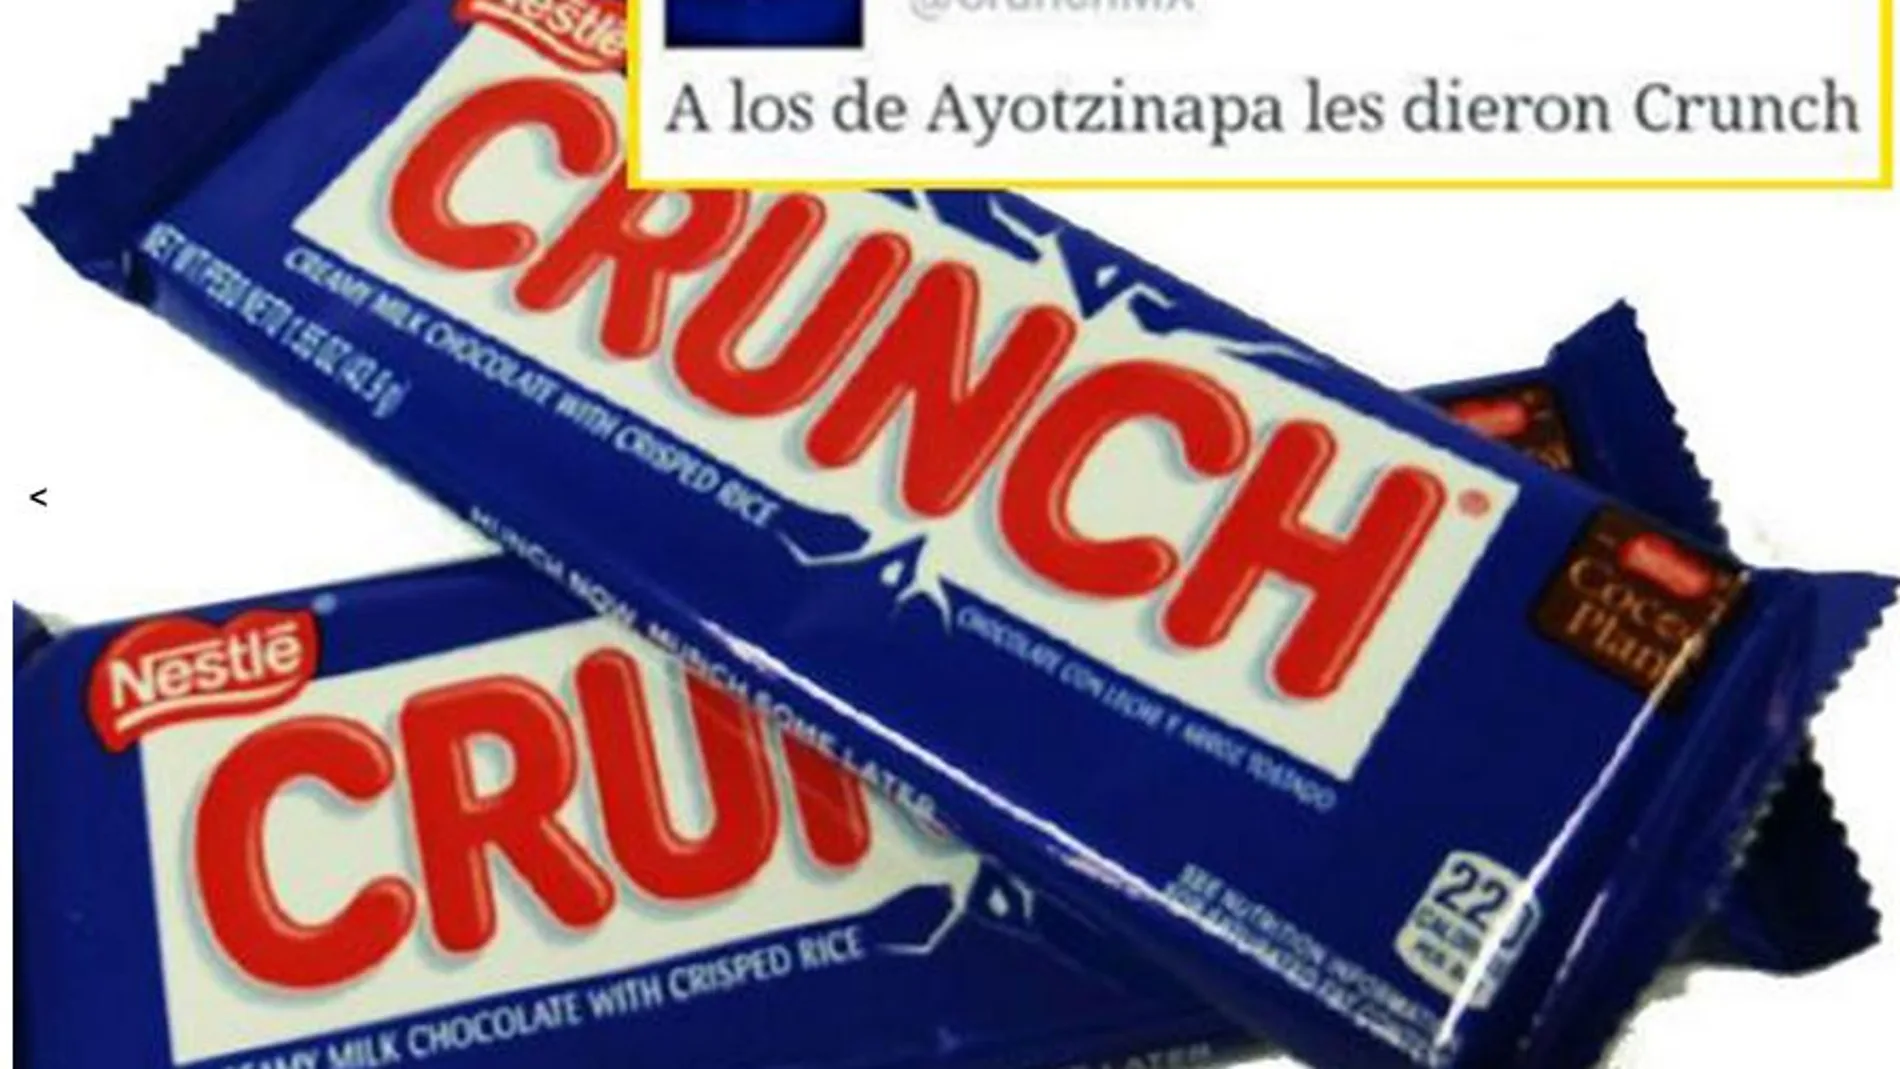 La macabra broma de "Crunch"sobre los estudiantes mexicanos asesinados